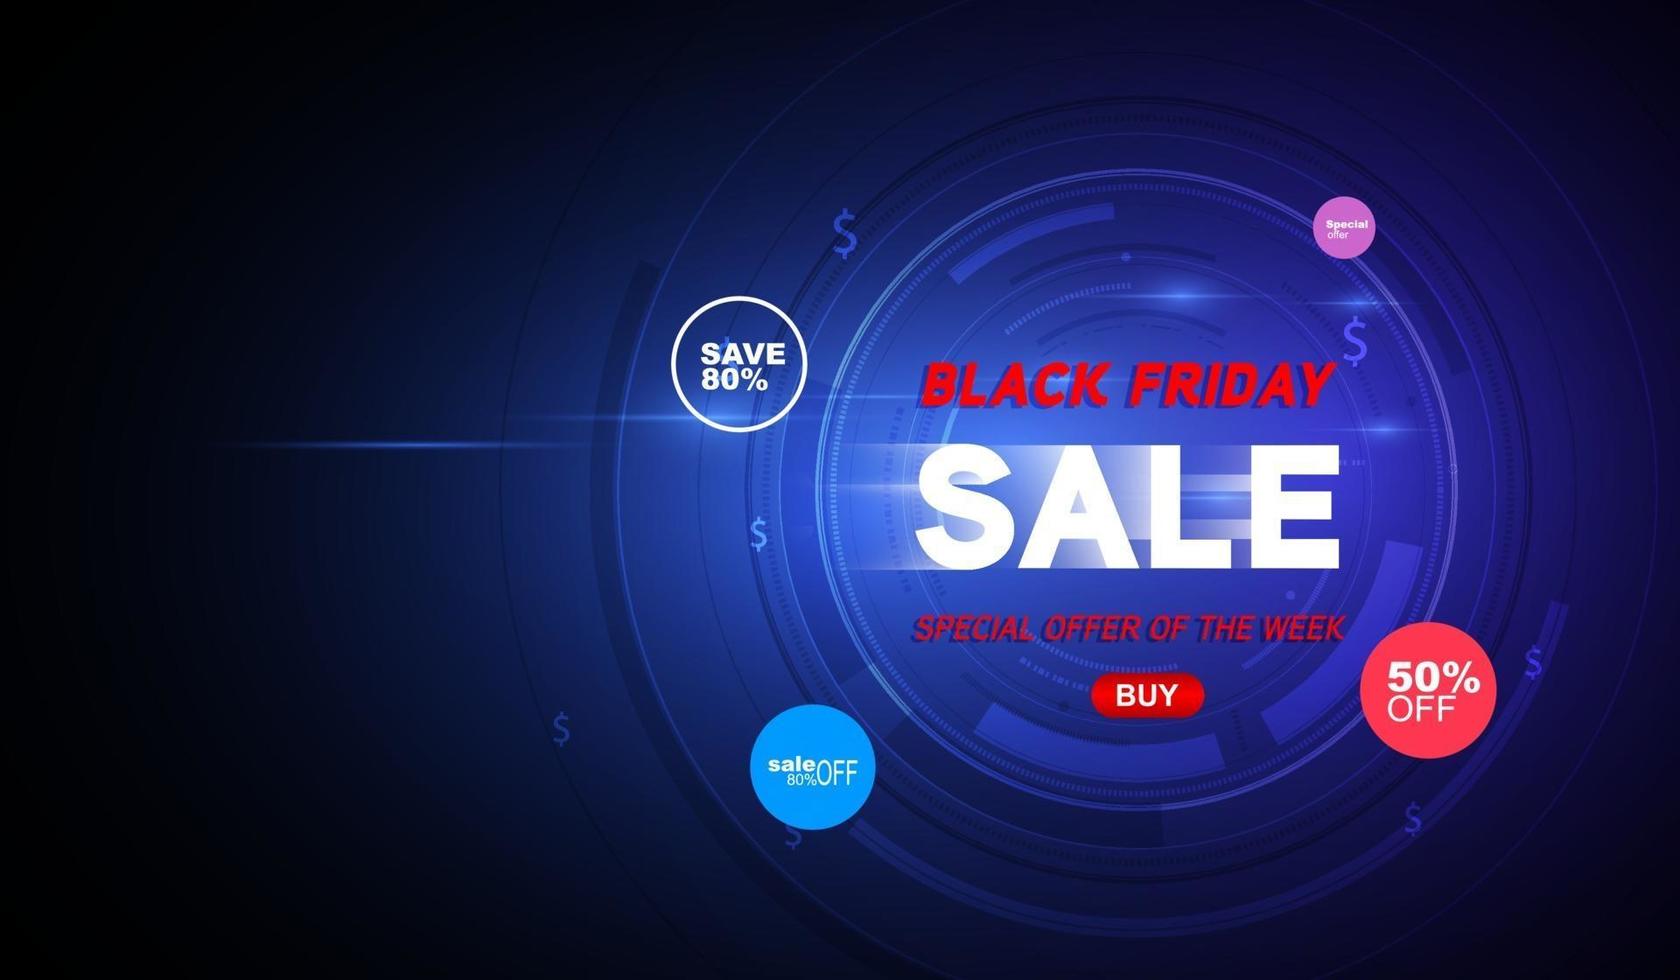 Black Friday super sale alleen vandaag vector